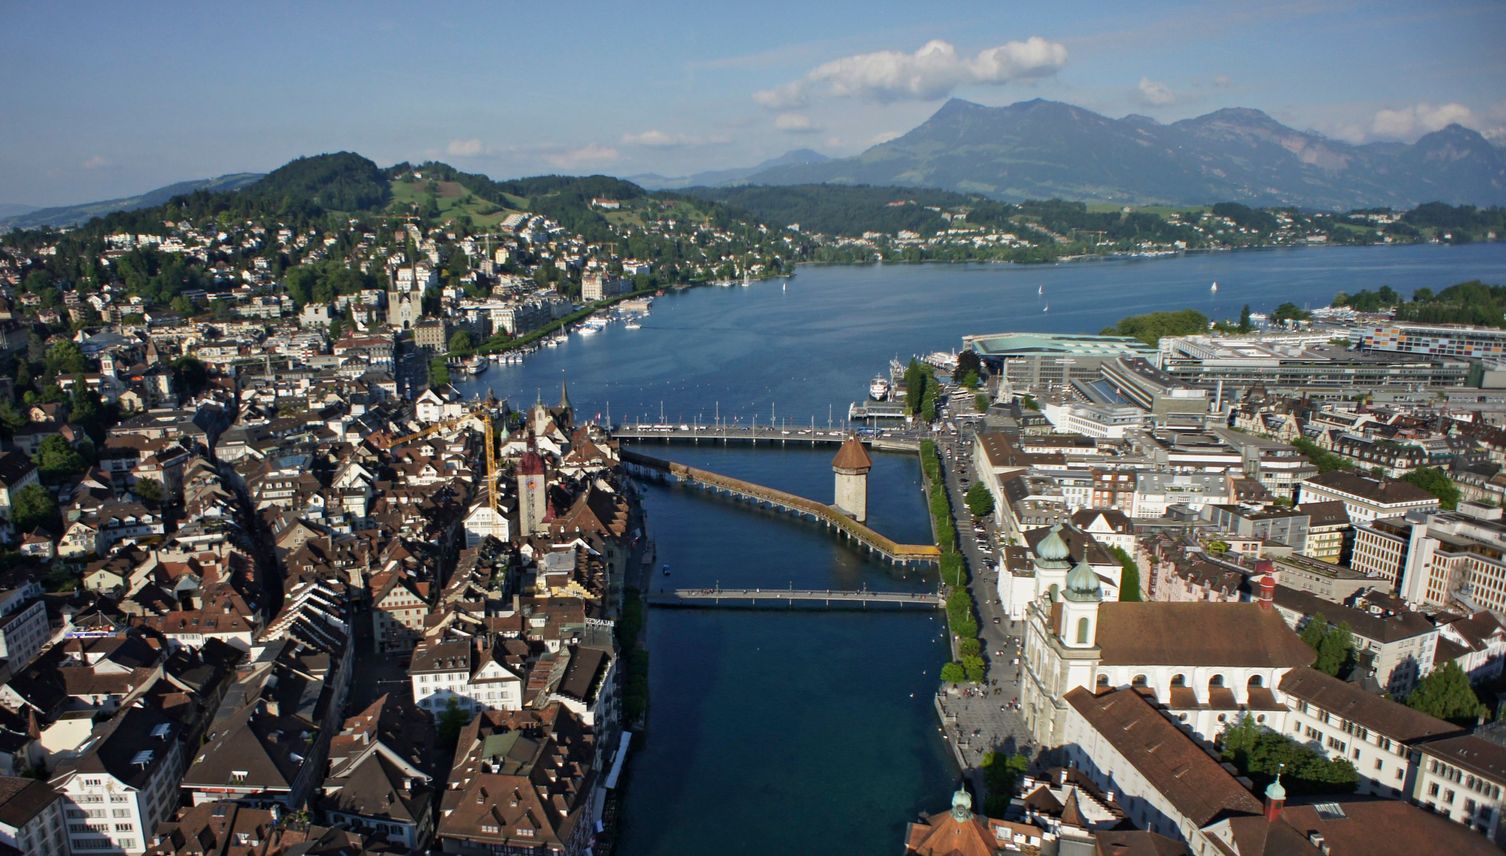 Trotz Airbnb: So viele Logiernächte in Luzern wie noch nie